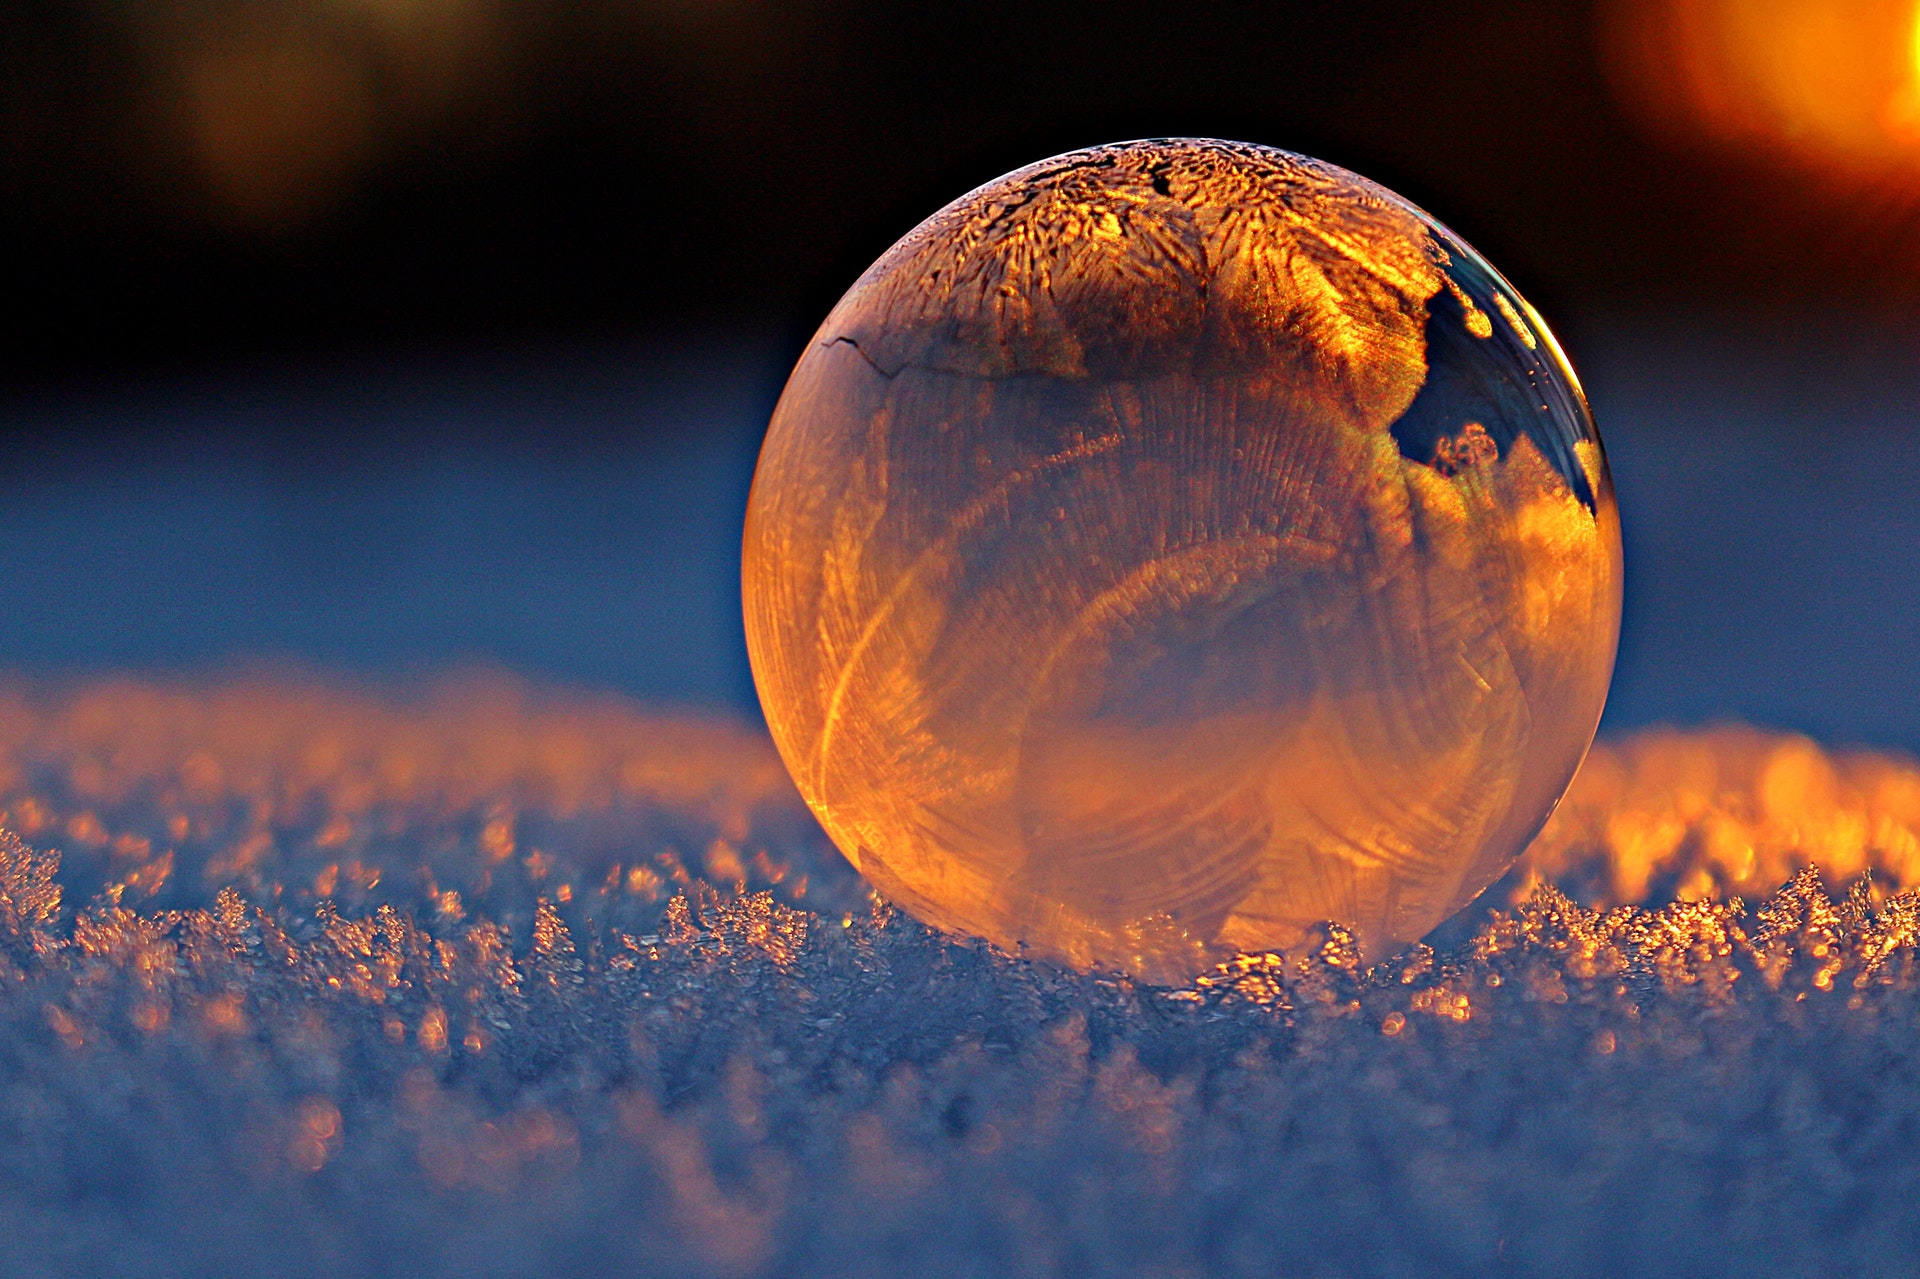 frozen-soap-bubble-pexels